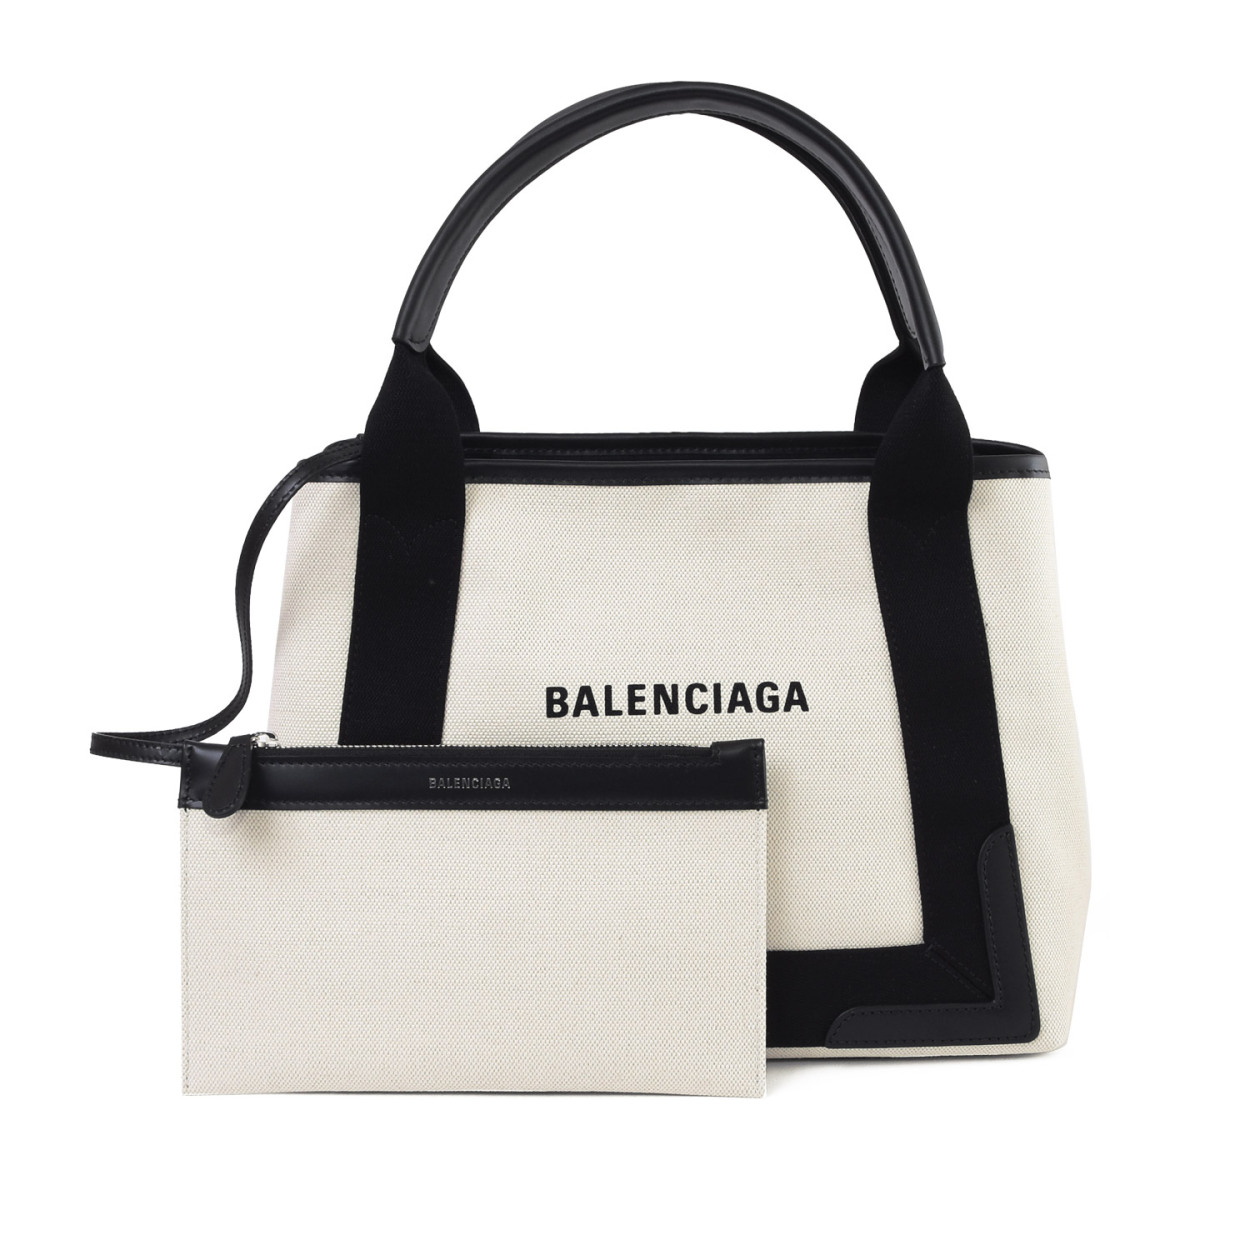 バレンシアガ BALENCIAGA トートバッグ Sサイズ ハンドバッグ 鞄 